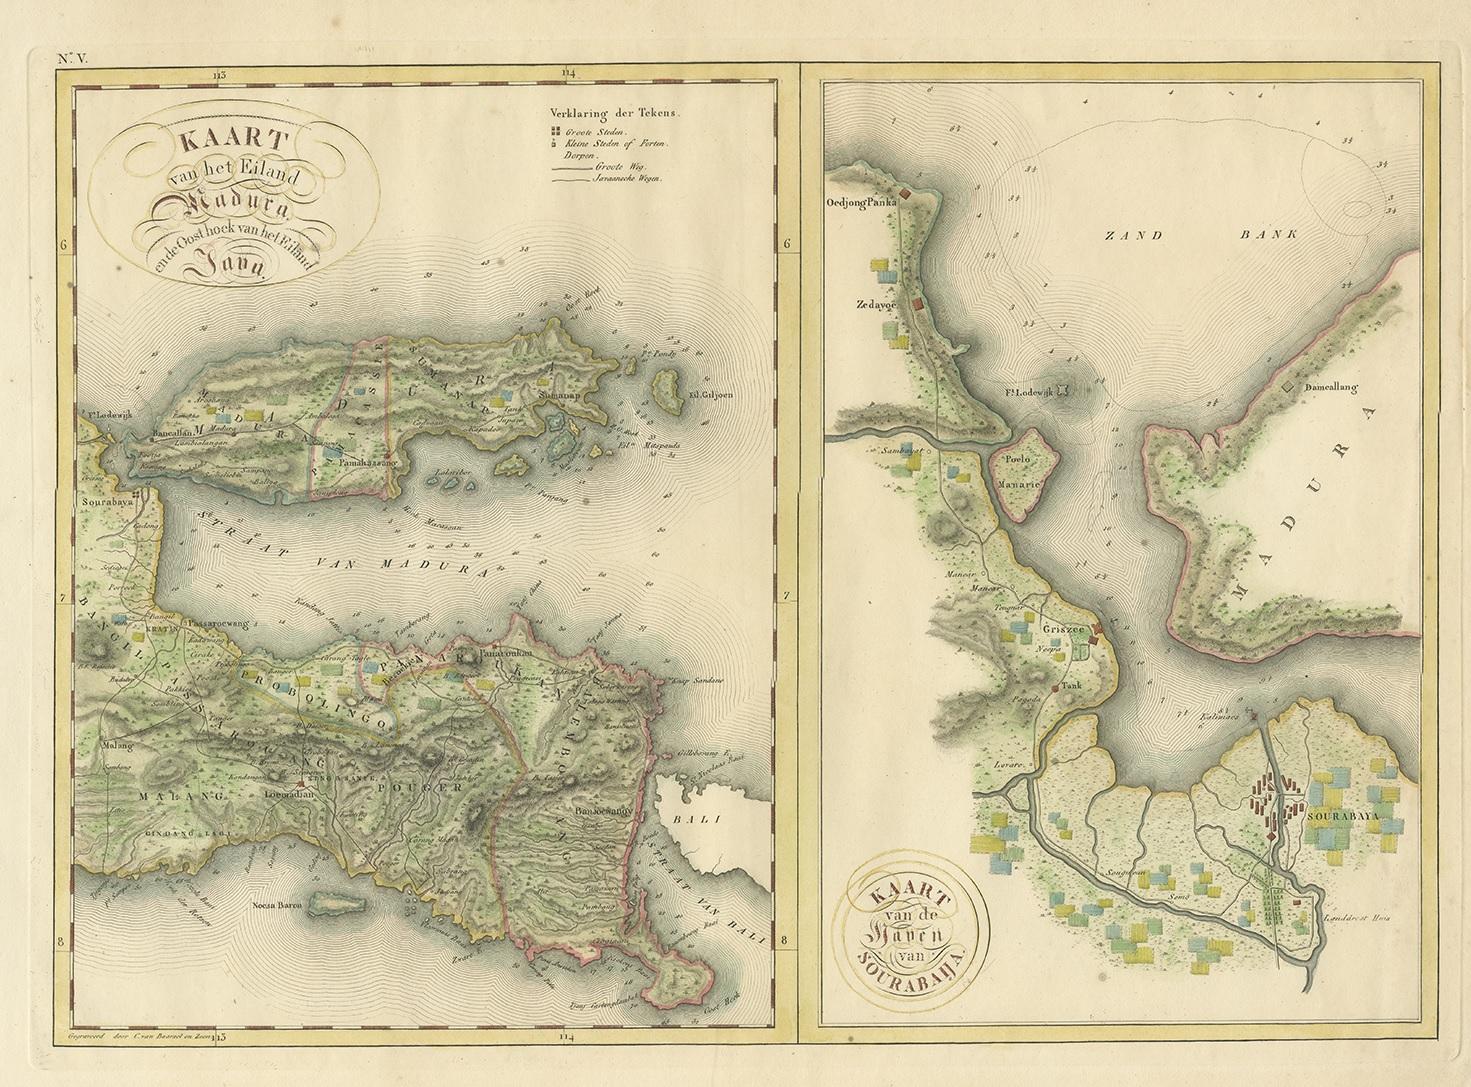 Two maps on one sheet titled 'Kaart van het Eiland Madura en de Oost hoek van het Eiland Java' and 'Kaart van de Haven van Sourabaija'. The left map shows East Java with the Island of Madura. The right map shows the harbour of Surabaya, the capital